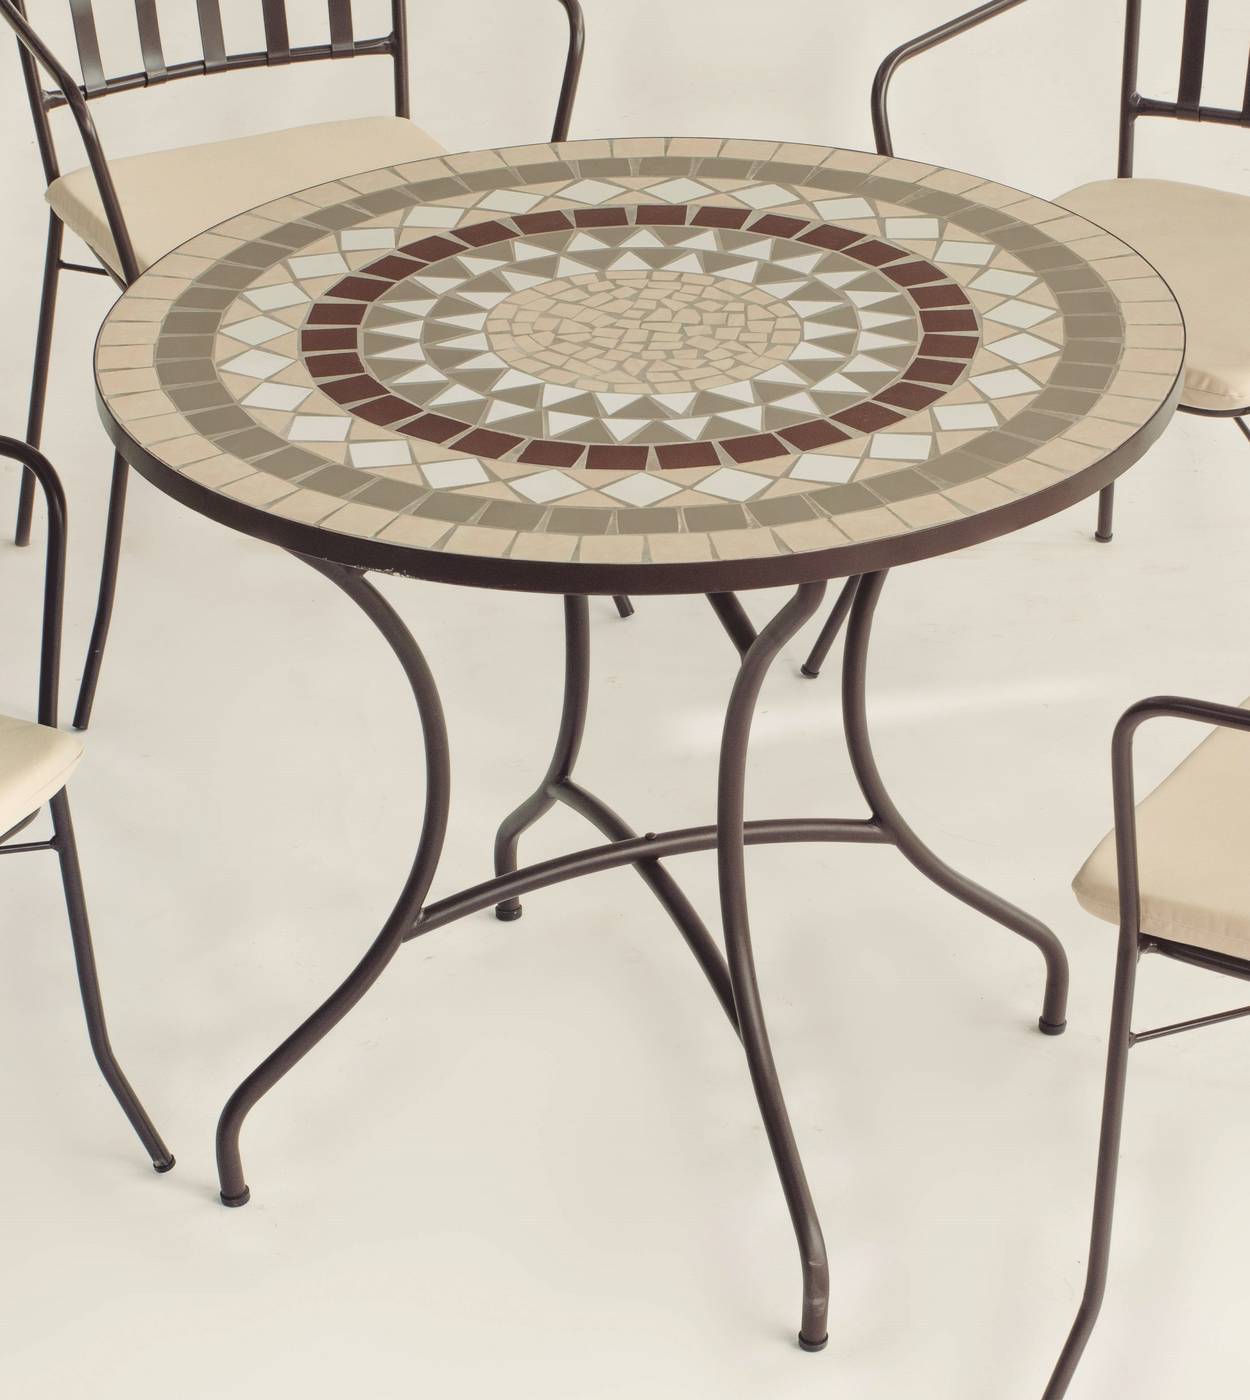 Conjunto Mosaico Camarines-Shifa - Conjunto de forja color bronce: mesa con tablero mosaico de 90 cm + 4 sillones con cojines asiento.